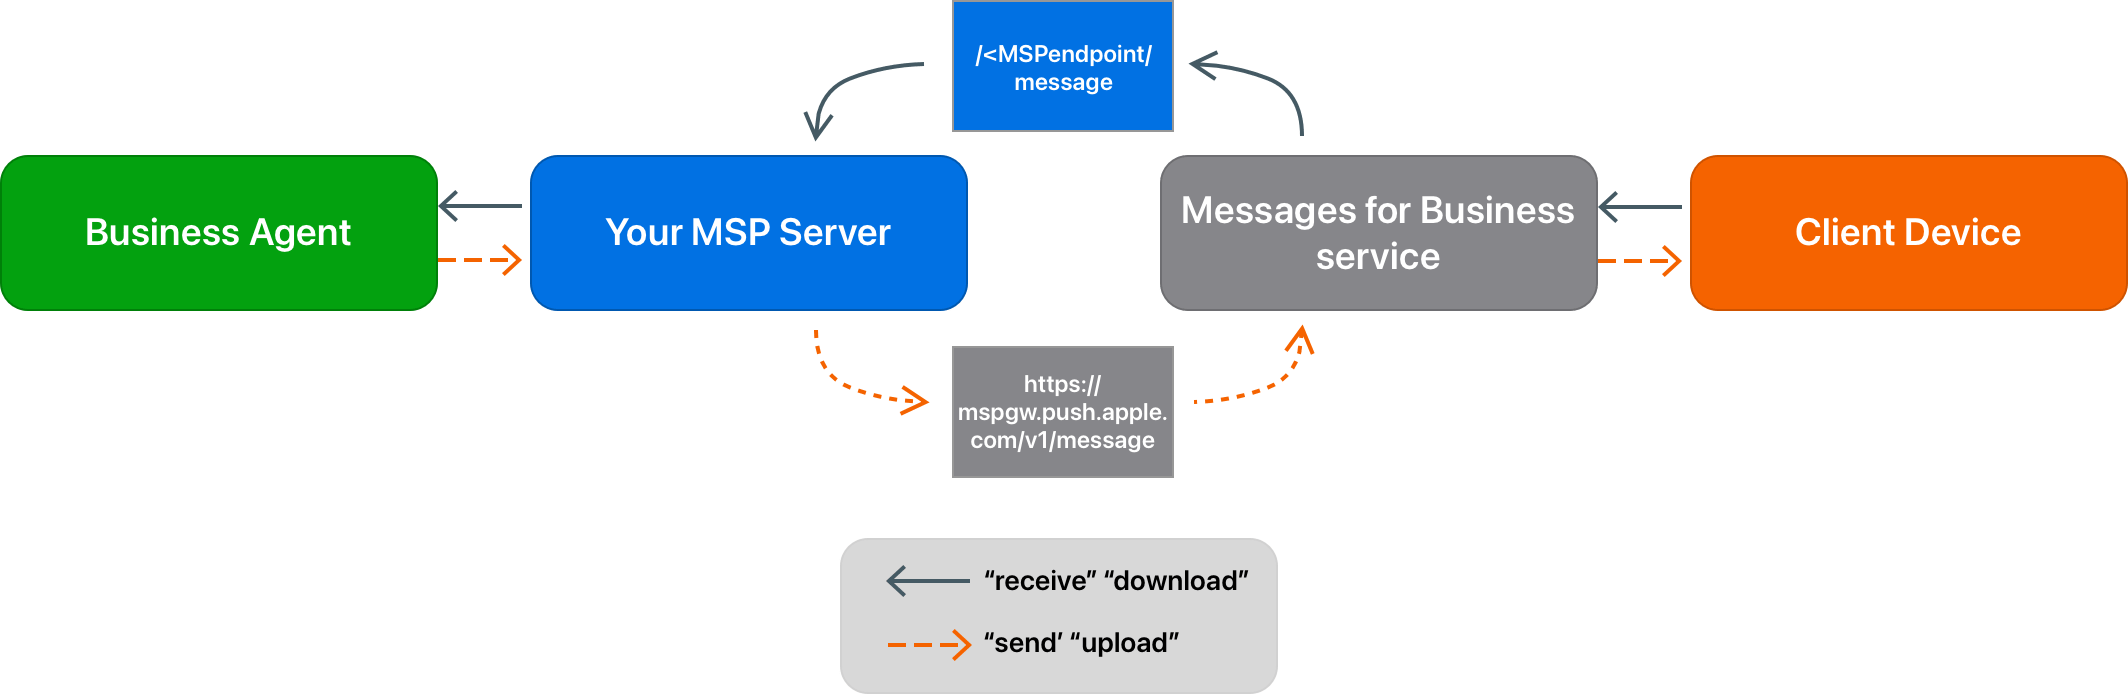 test-server-integration-apple-messages-for-business